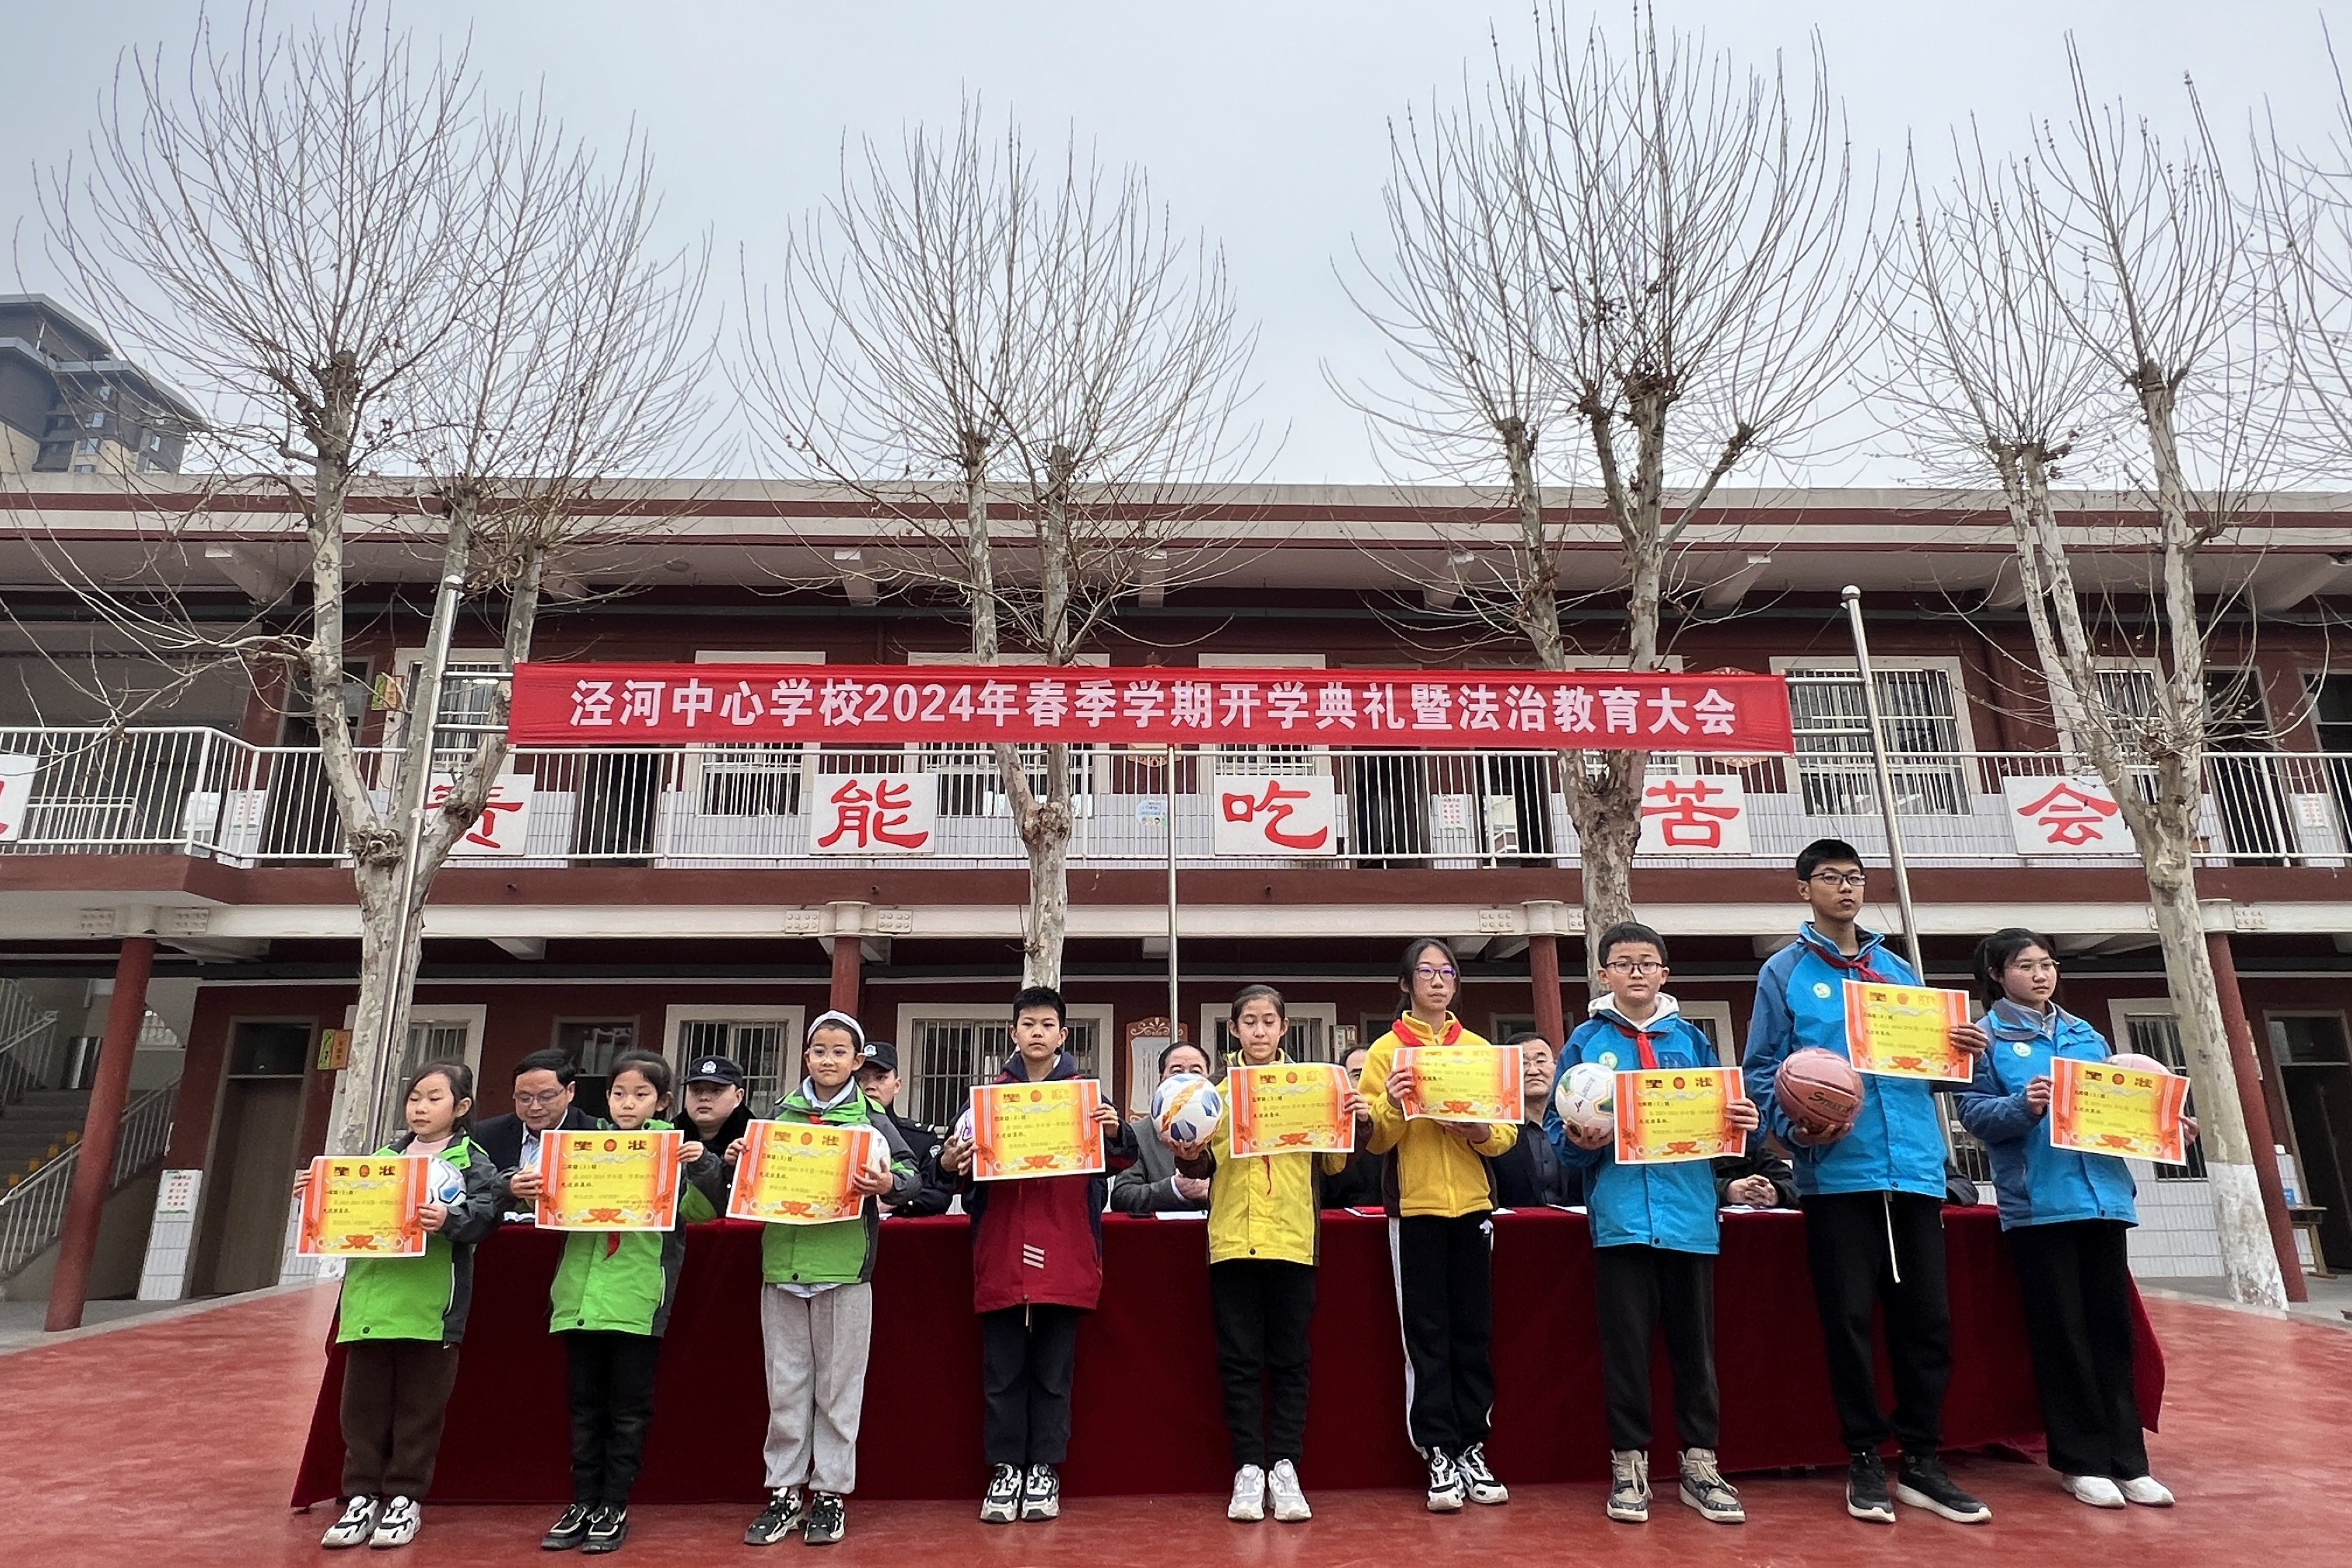 西安泾河工业区中心学校隆重召开2024年春季开学典礼暨法治教育大会